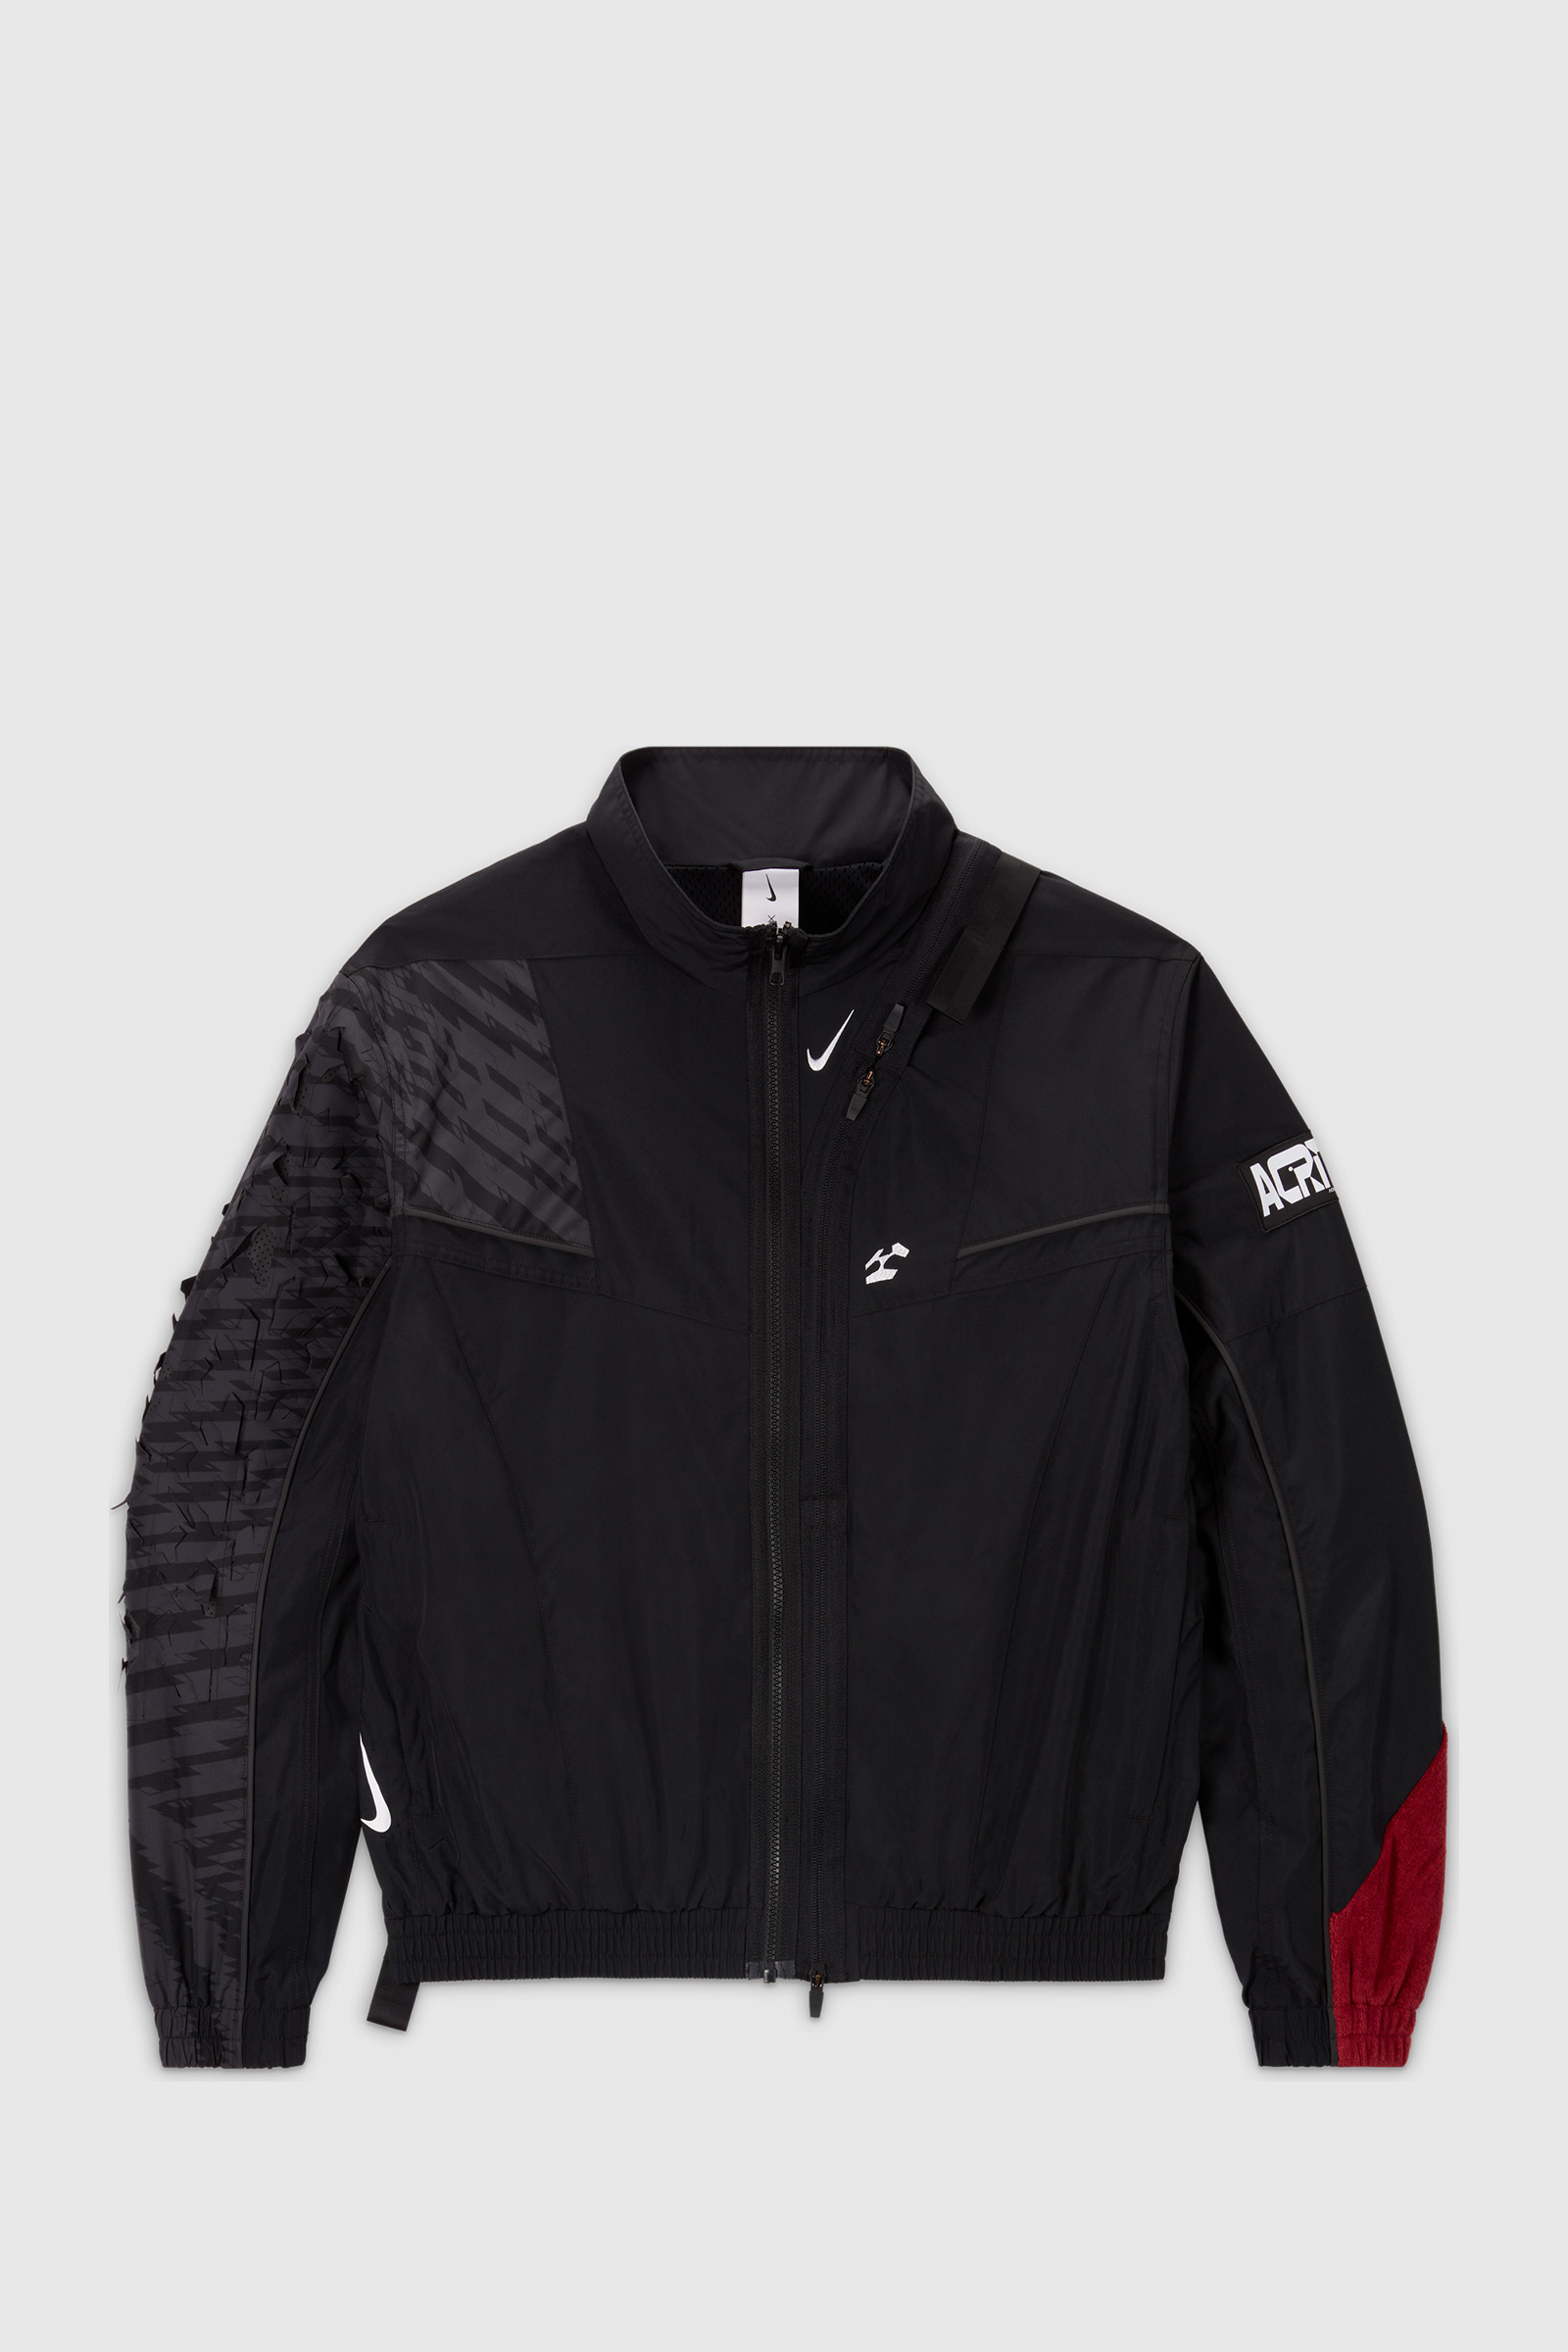 Nike M NRG CS Woven Jacket Black/black (010)